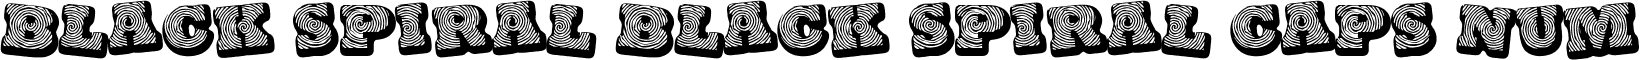 Black spiral Black spiral CAPS NUM font - black spiral.ttf